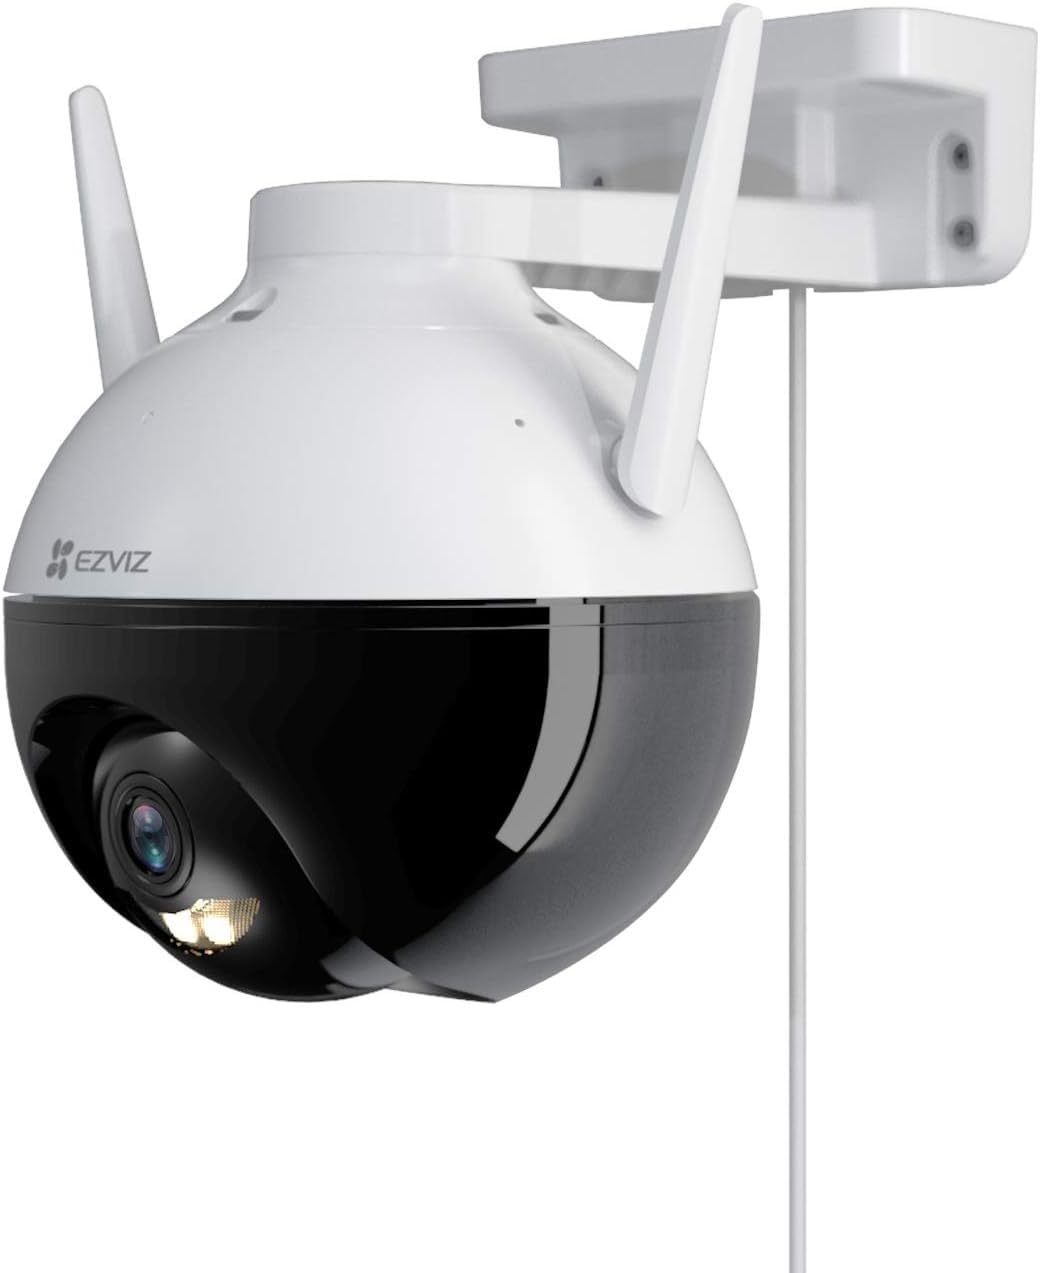 EZVIZ 1080P WLAN IP Kamera, Überwachungskamera mit 30 Meter Farbnachtsicht, KI Personenerkennung, Aktive Verteidigung und SD Kartenslot, PT Kamera für den Außenbereich, IP 65 wetterfest, C8C